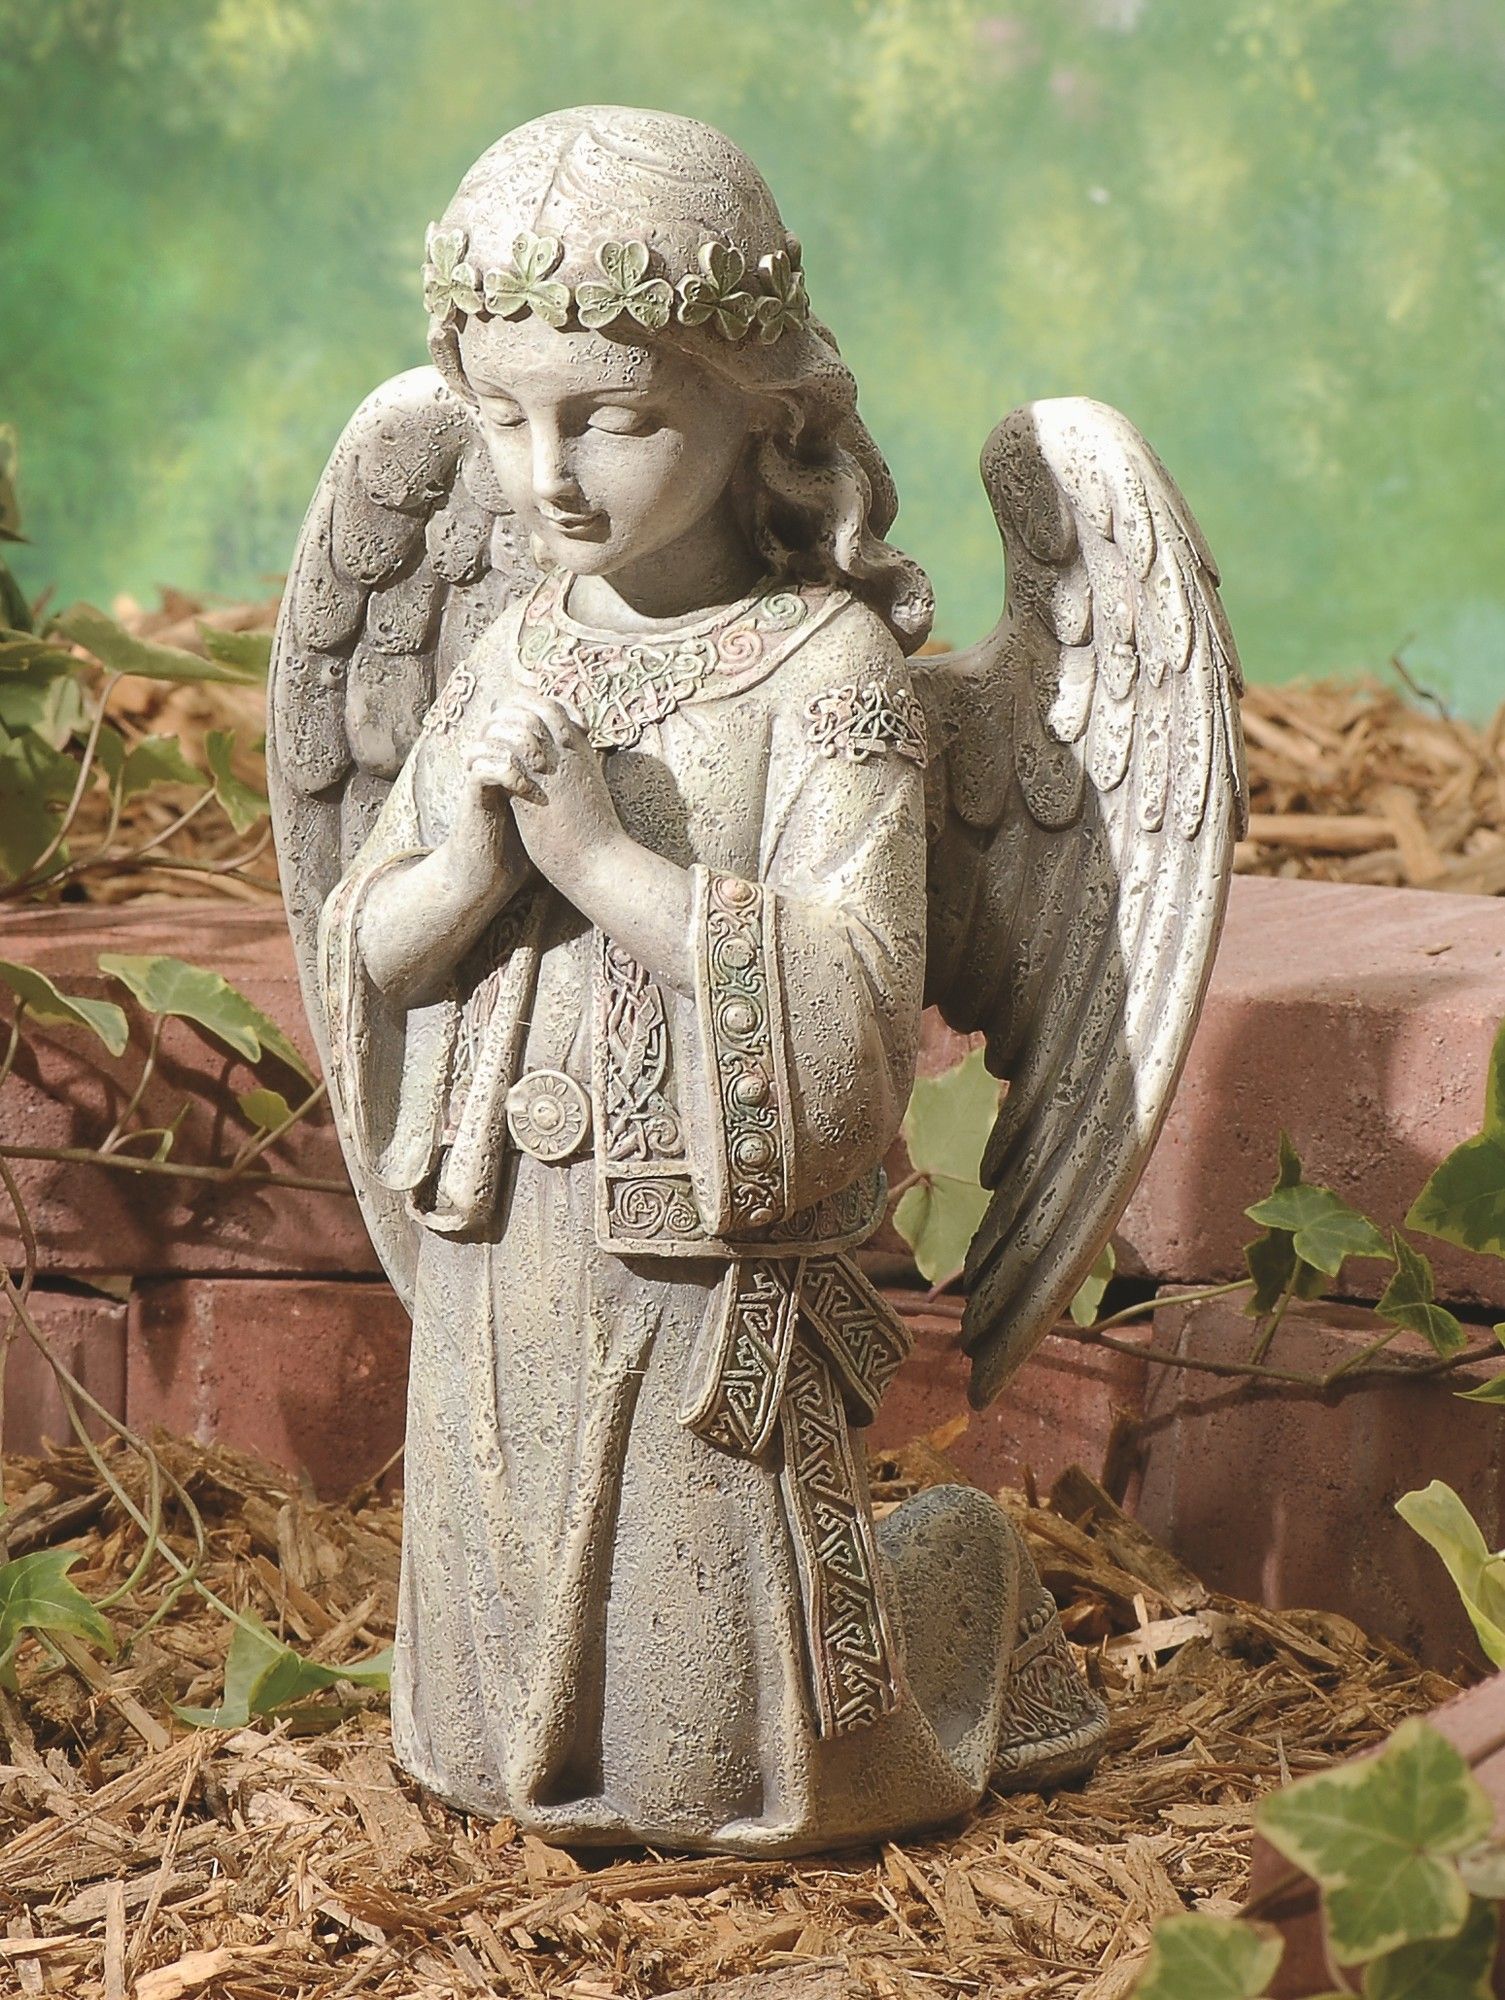 This Angel Birds Garden Statue